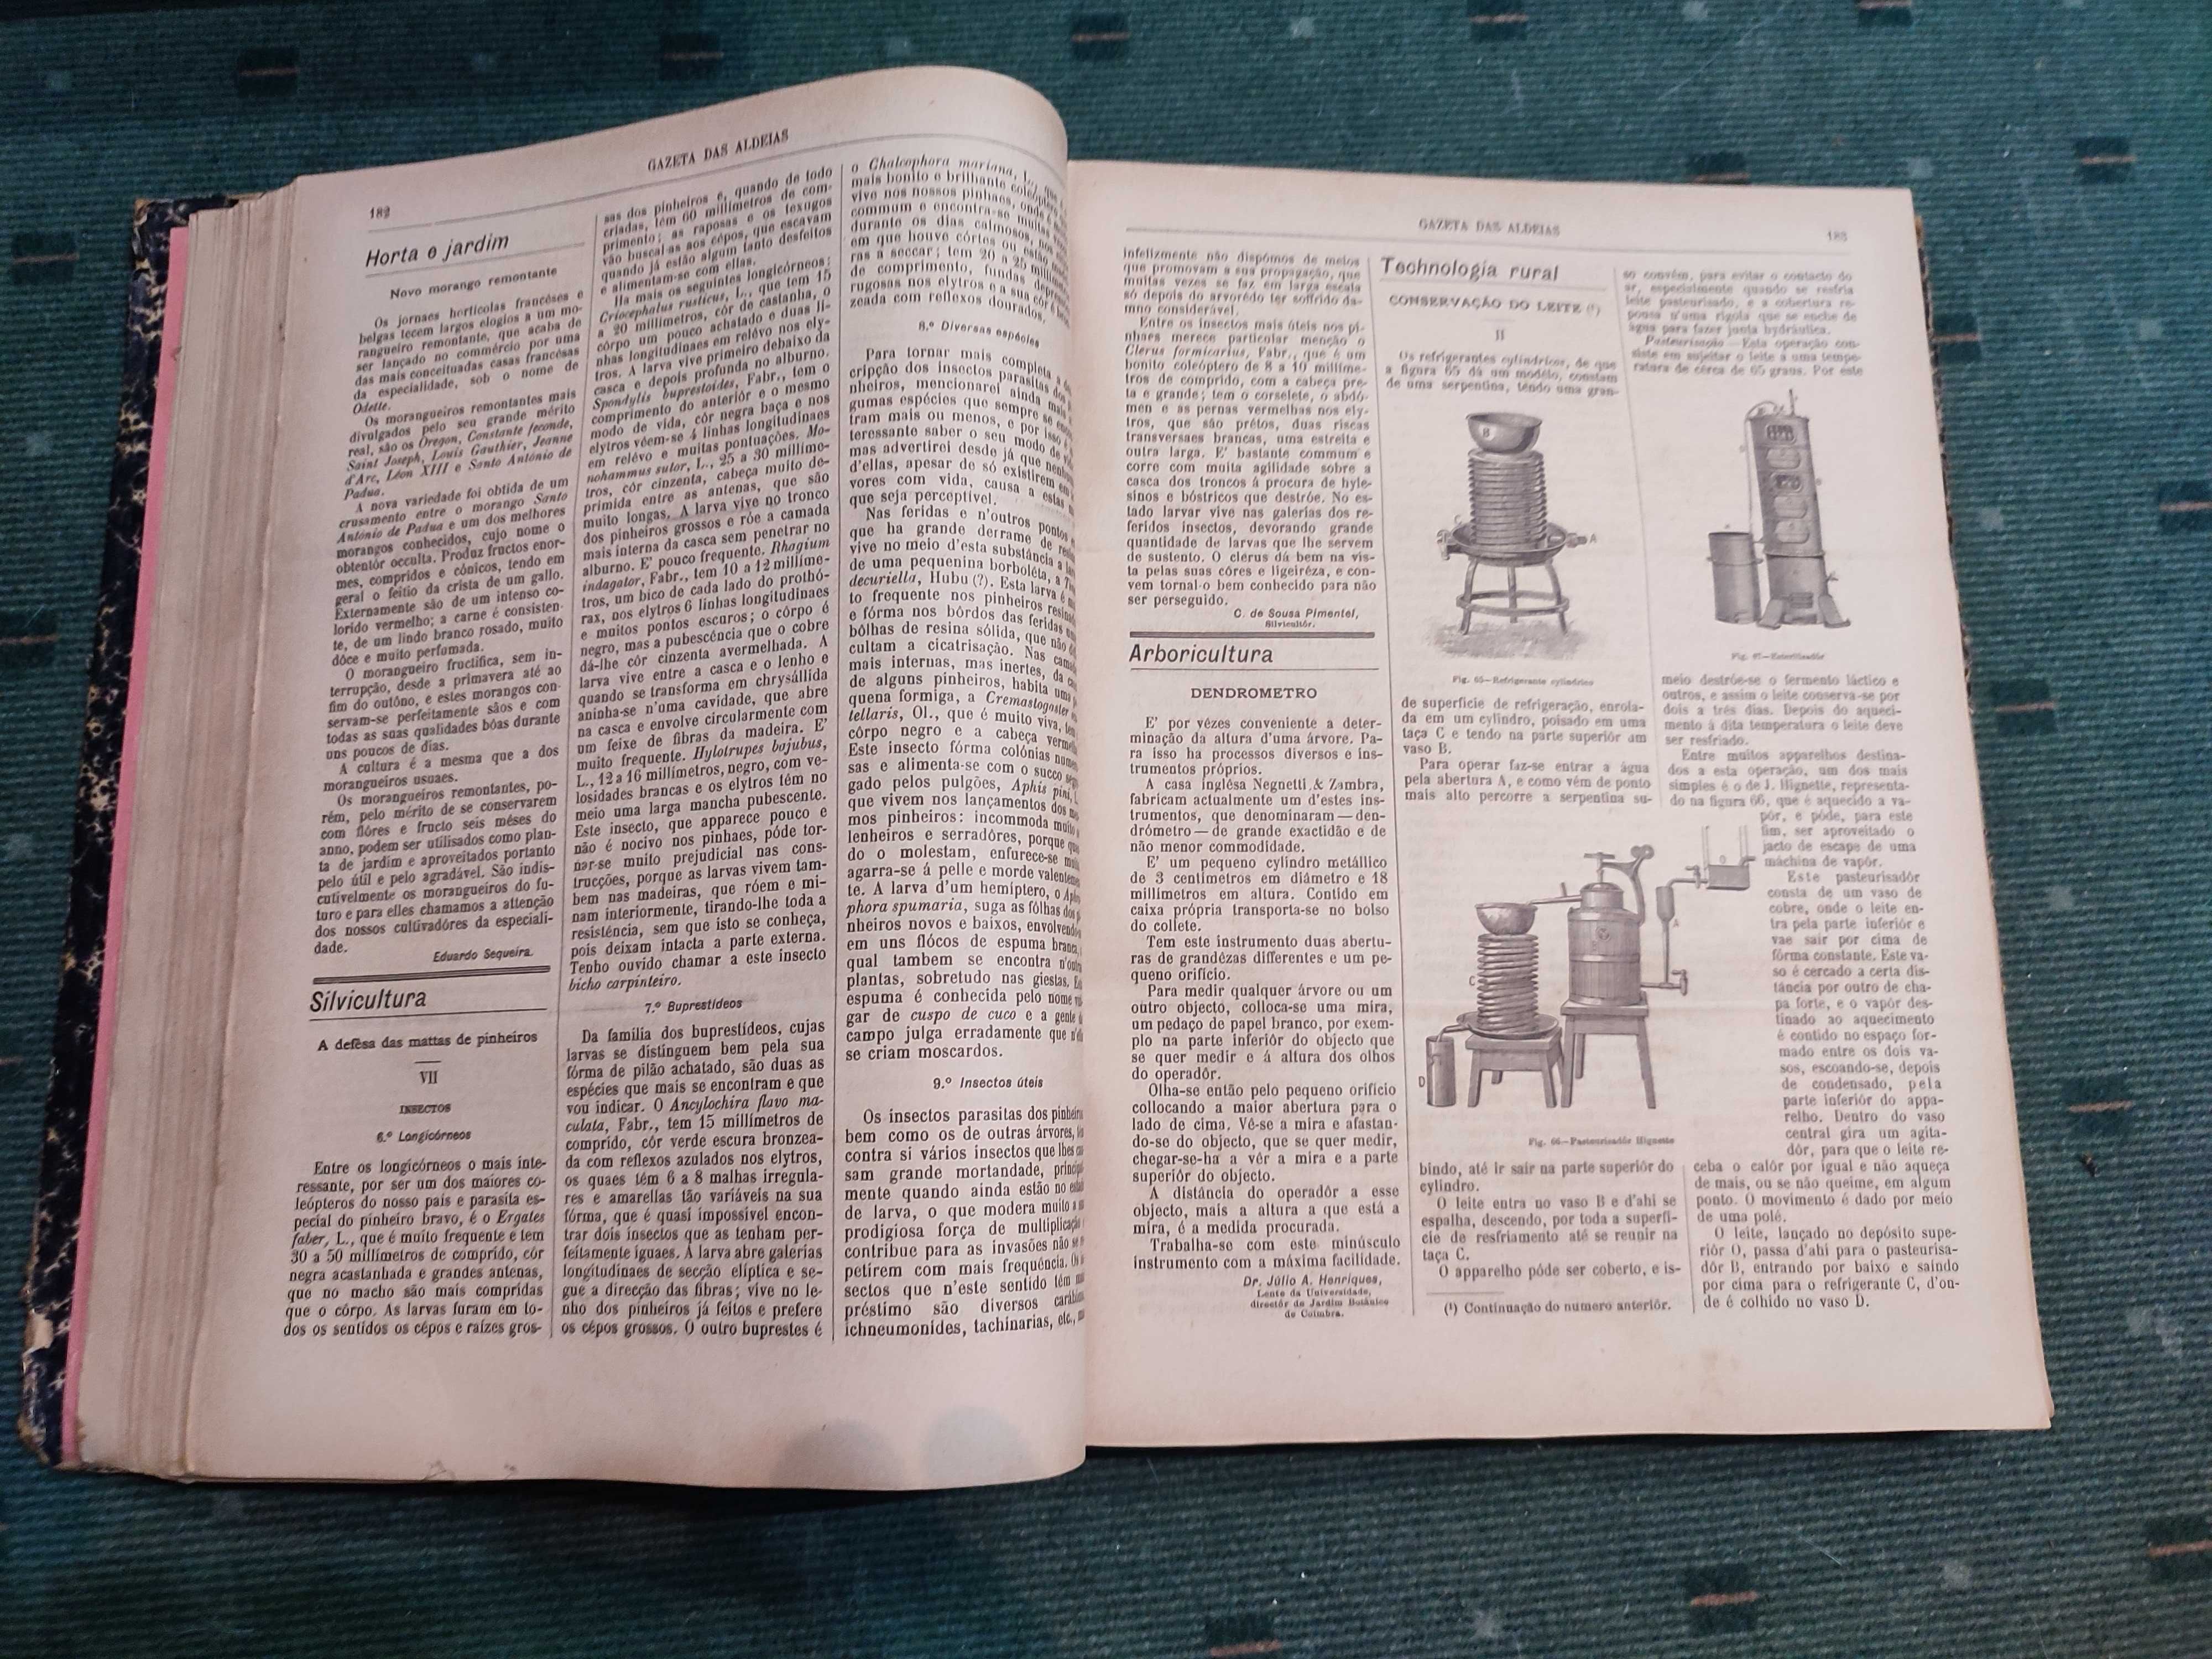 Gazeta das Aldeias - Ano de 1903 - 51 revistas encadernadas